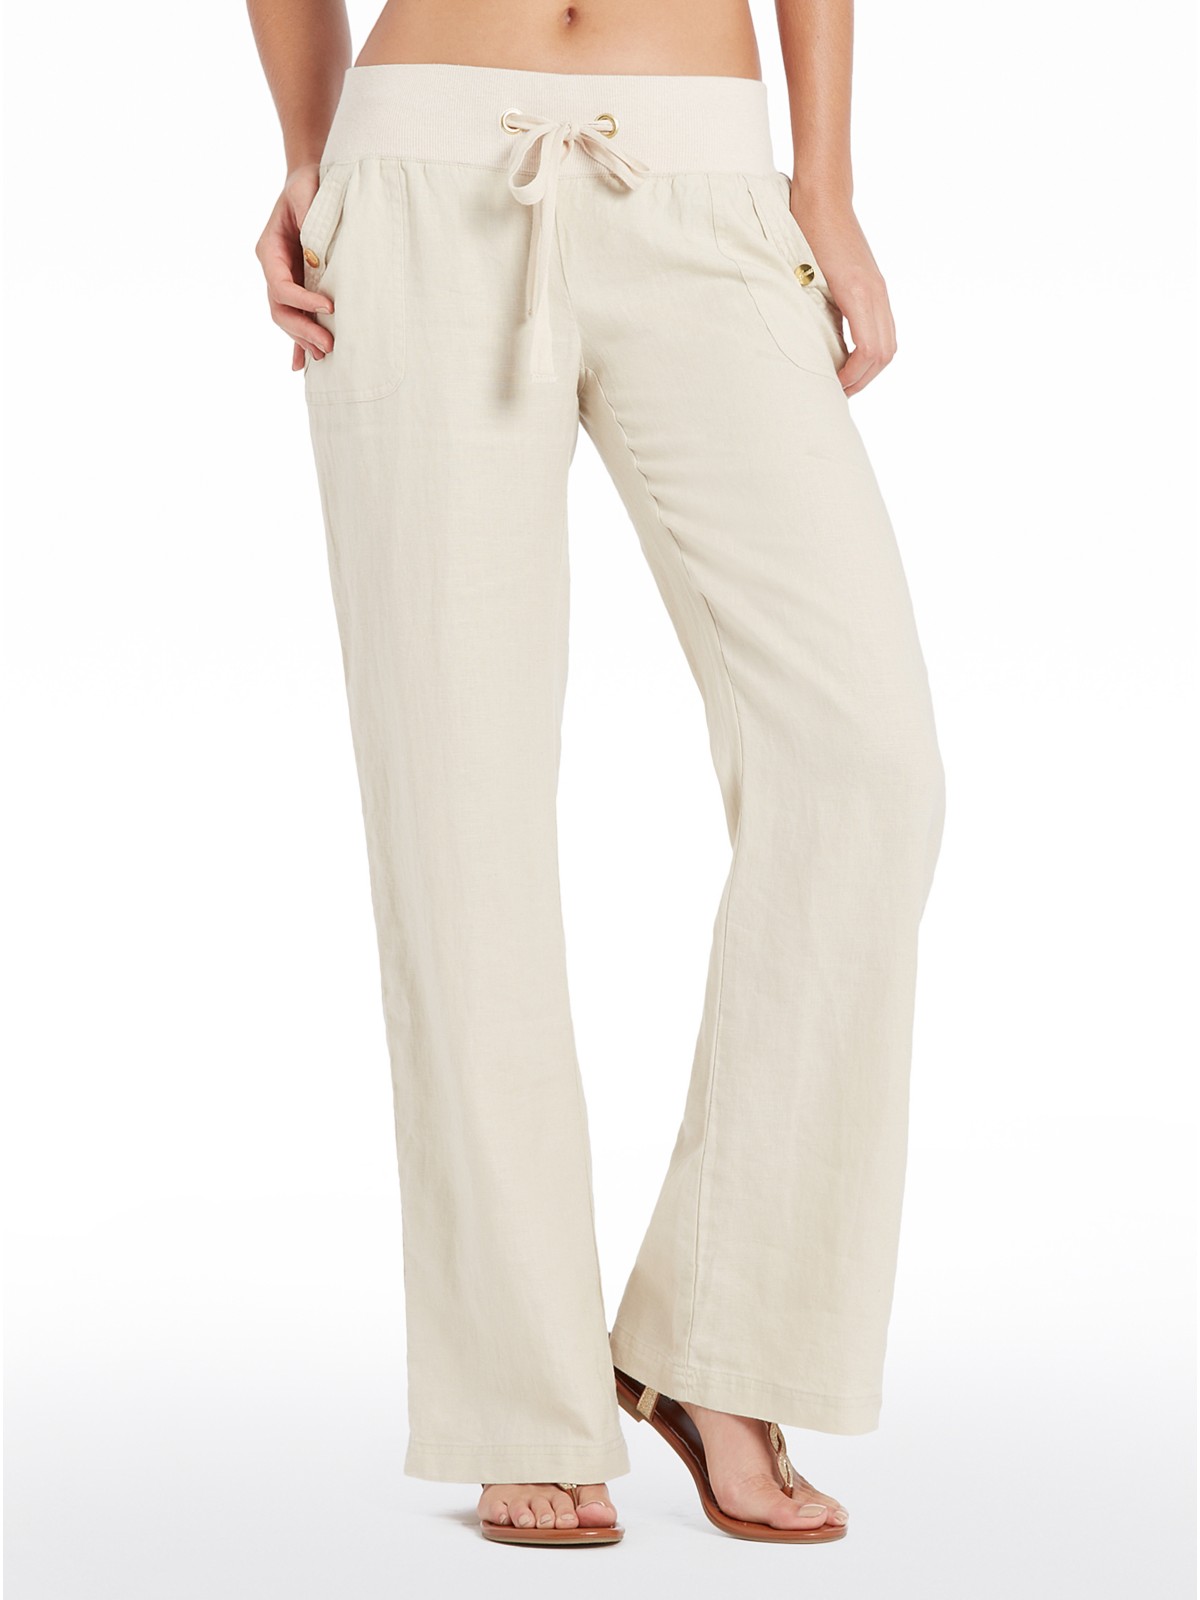 GUESS Women's Teagan Linen Pants | eBay